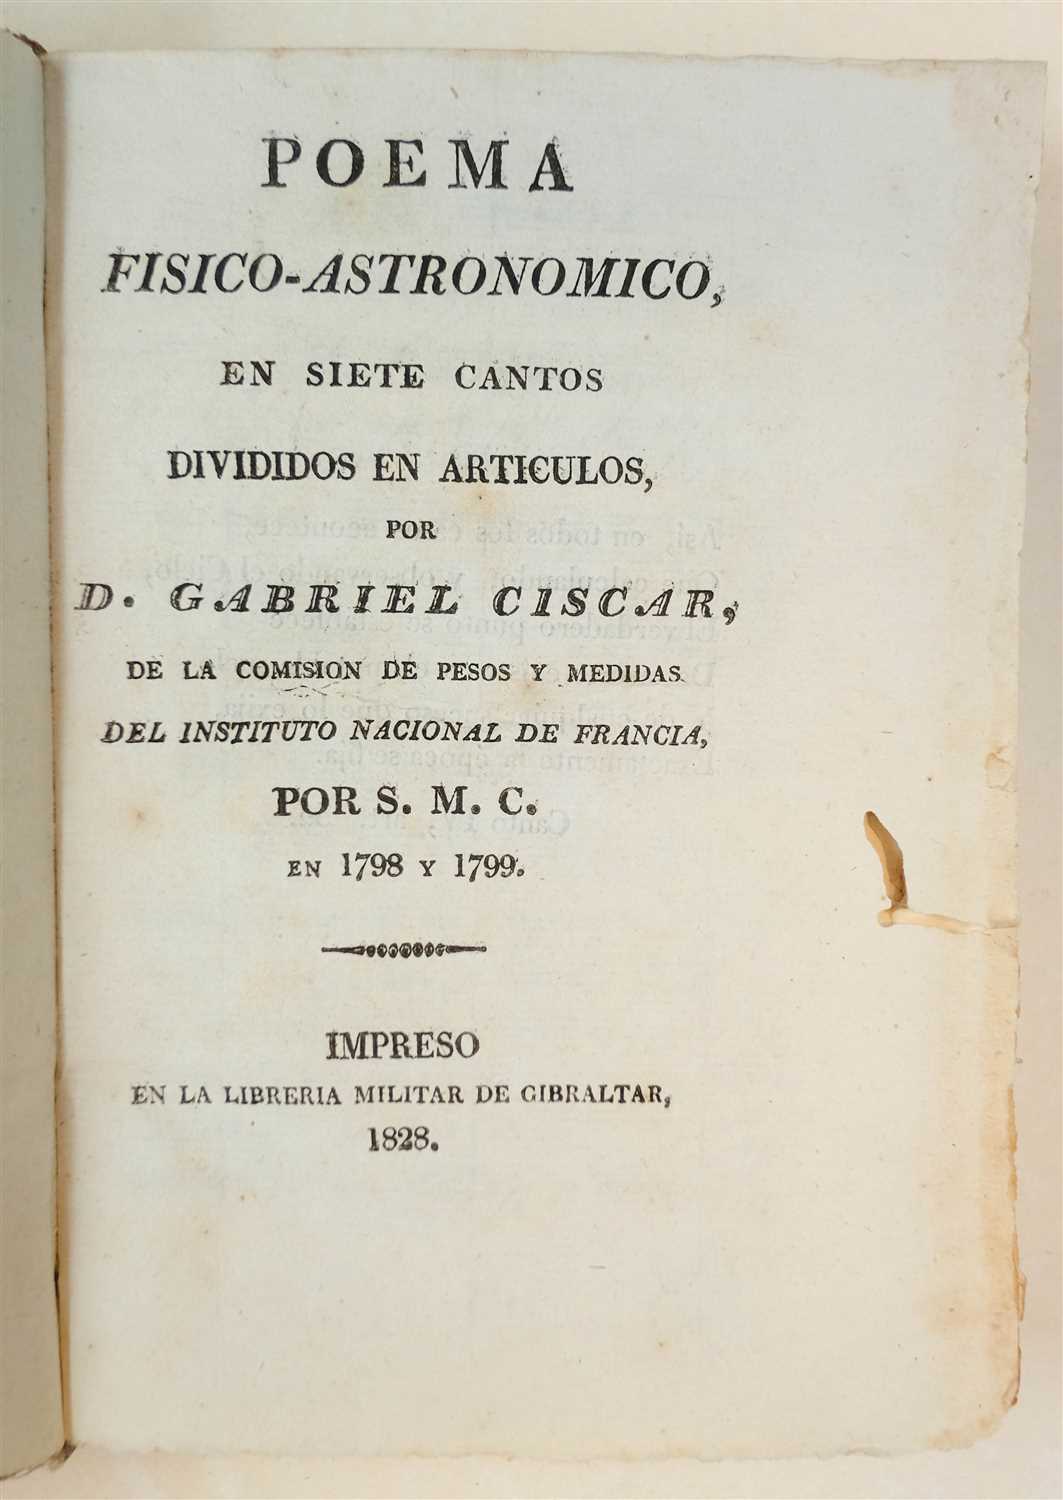 Lot 101 - Ciscar (Gabriel). Poema Fisico-Astronomico, en siete cantos, 1828